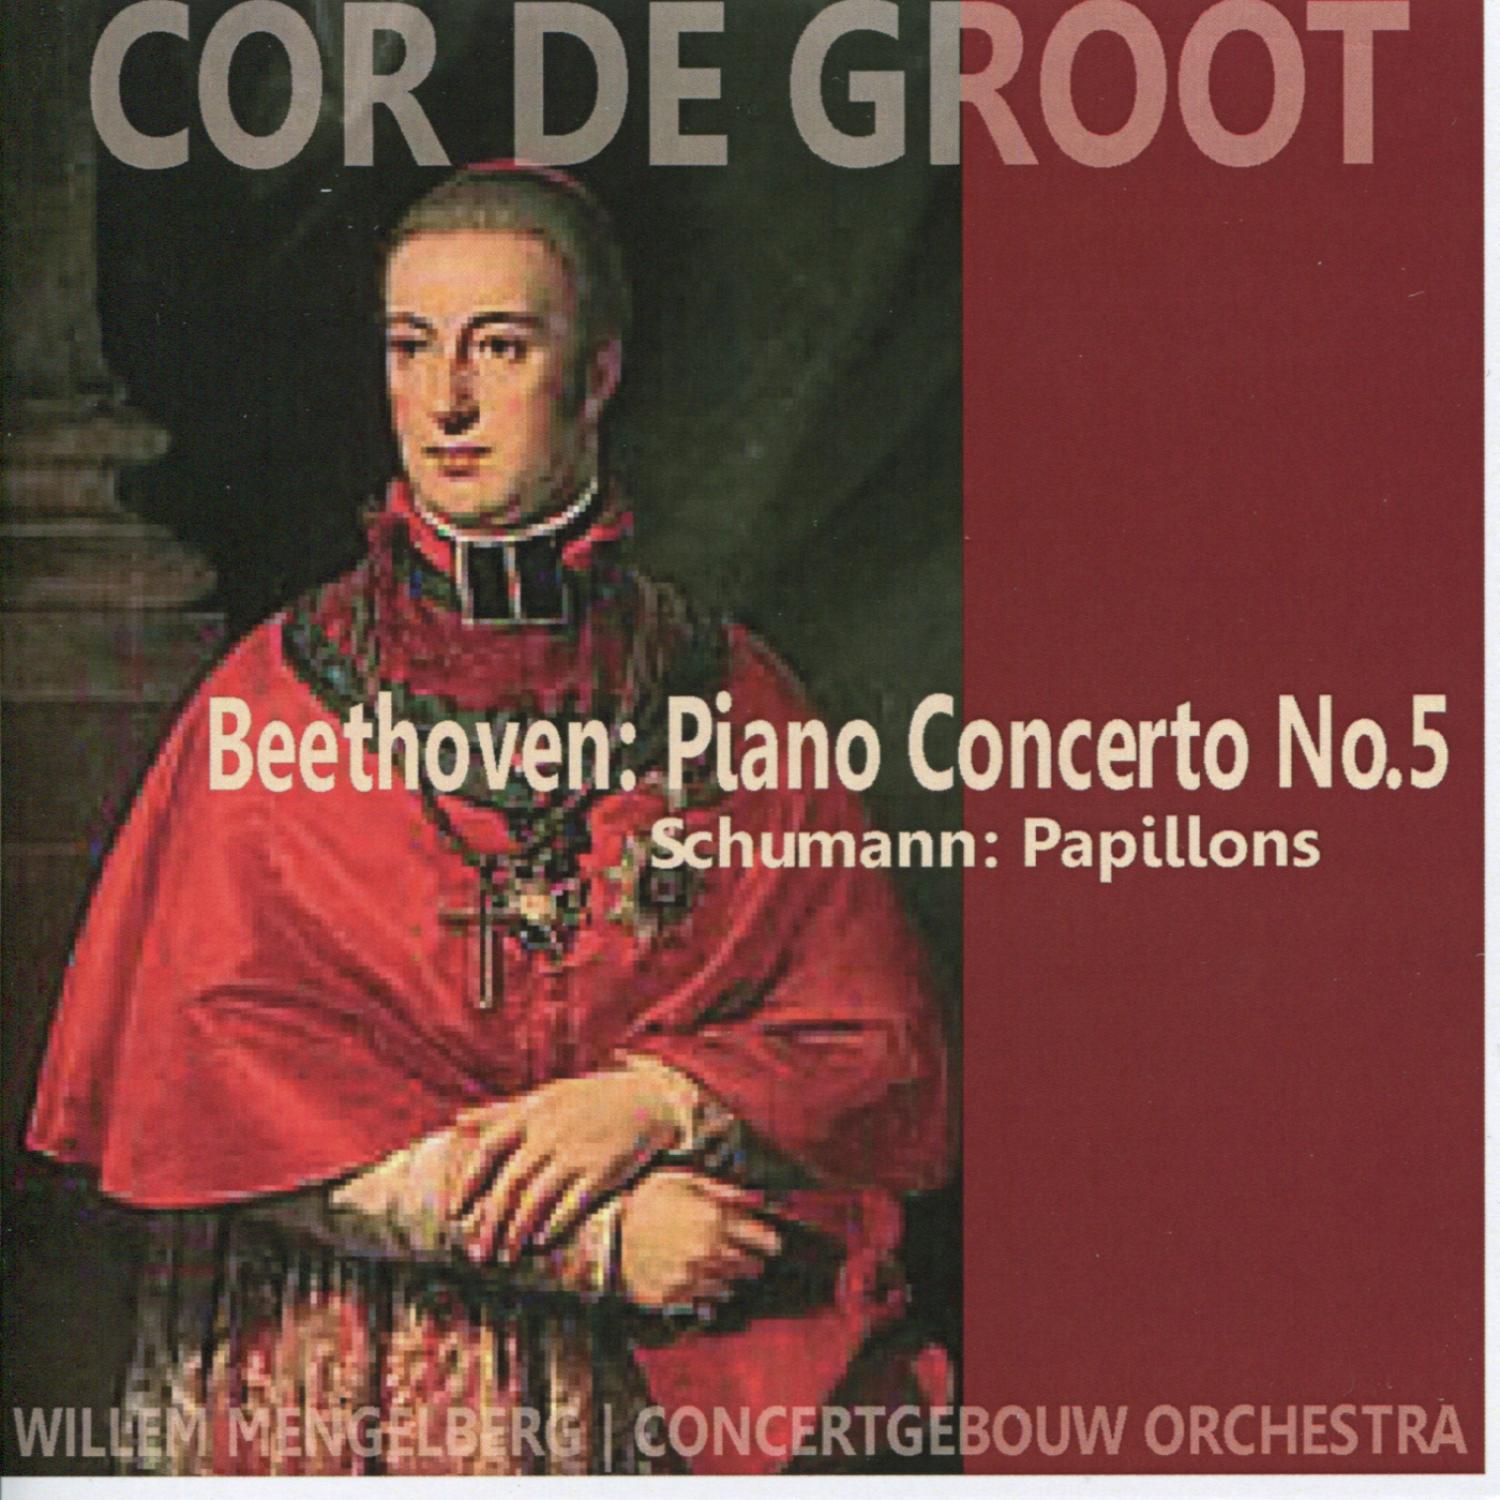 Piano Concerto No. 5 in E-Flat Major, Op. 73 - "Emperor": I. Allegro